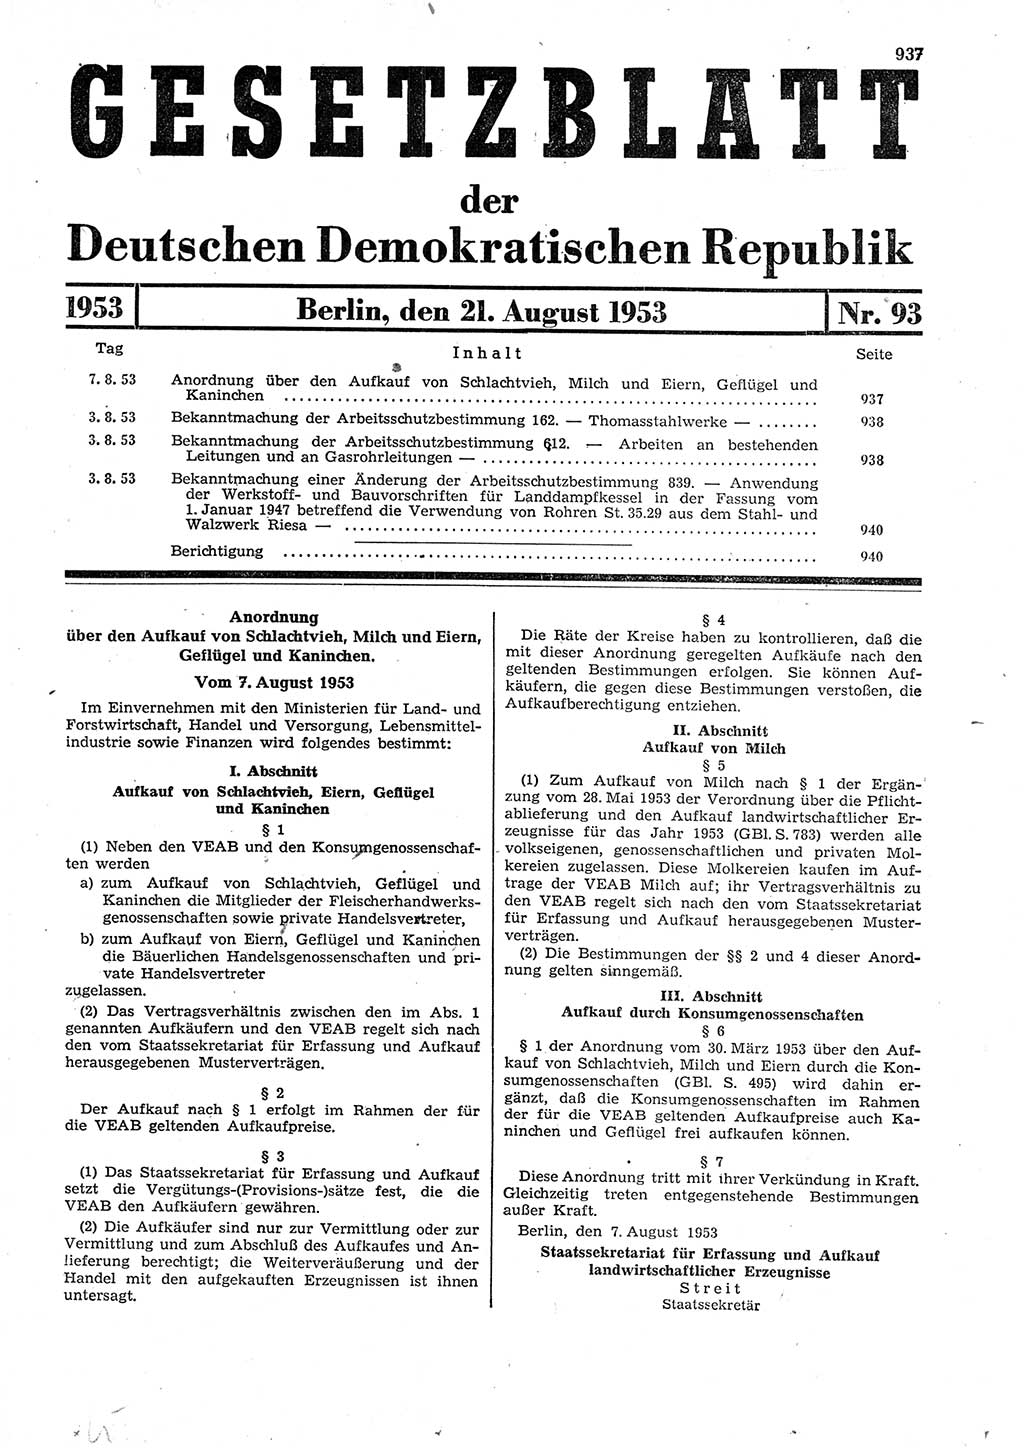 Gesetzblatt (GBl.) der Deutschen Demokratischen Republik (DDR) 1953, Seite 937 (GBl. DDR 1953, S. 937)